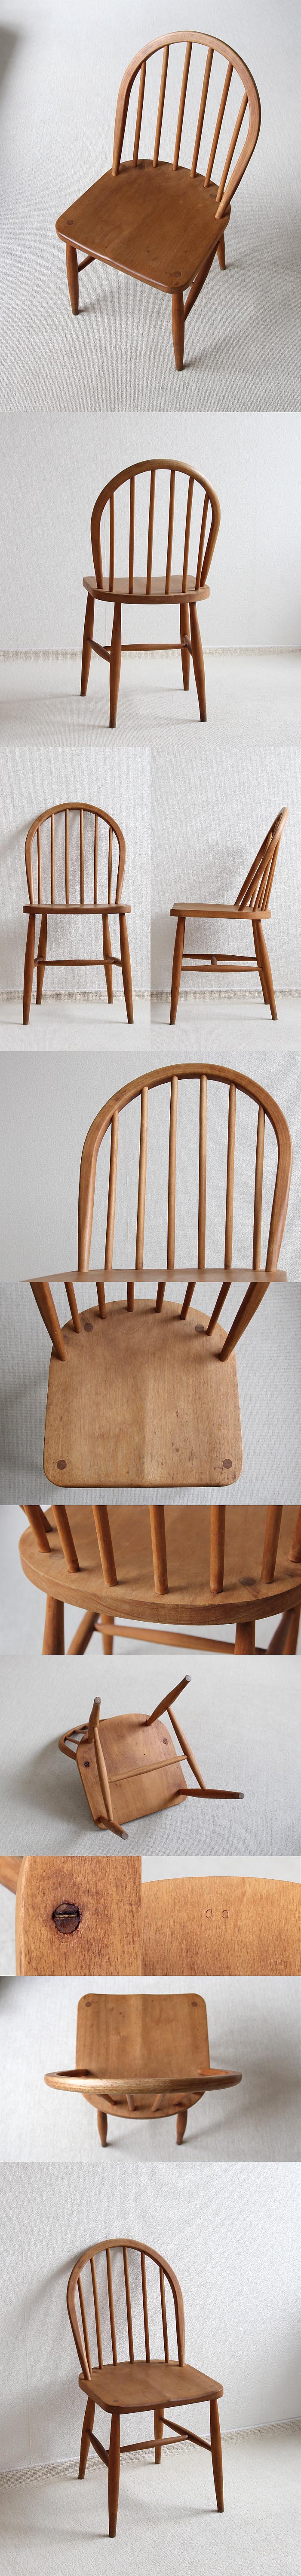 イギリス ヴィンテージ アーコールチェア ERCOL 木製椅子 アンティーク 家具 「フープバックチェア」V-753